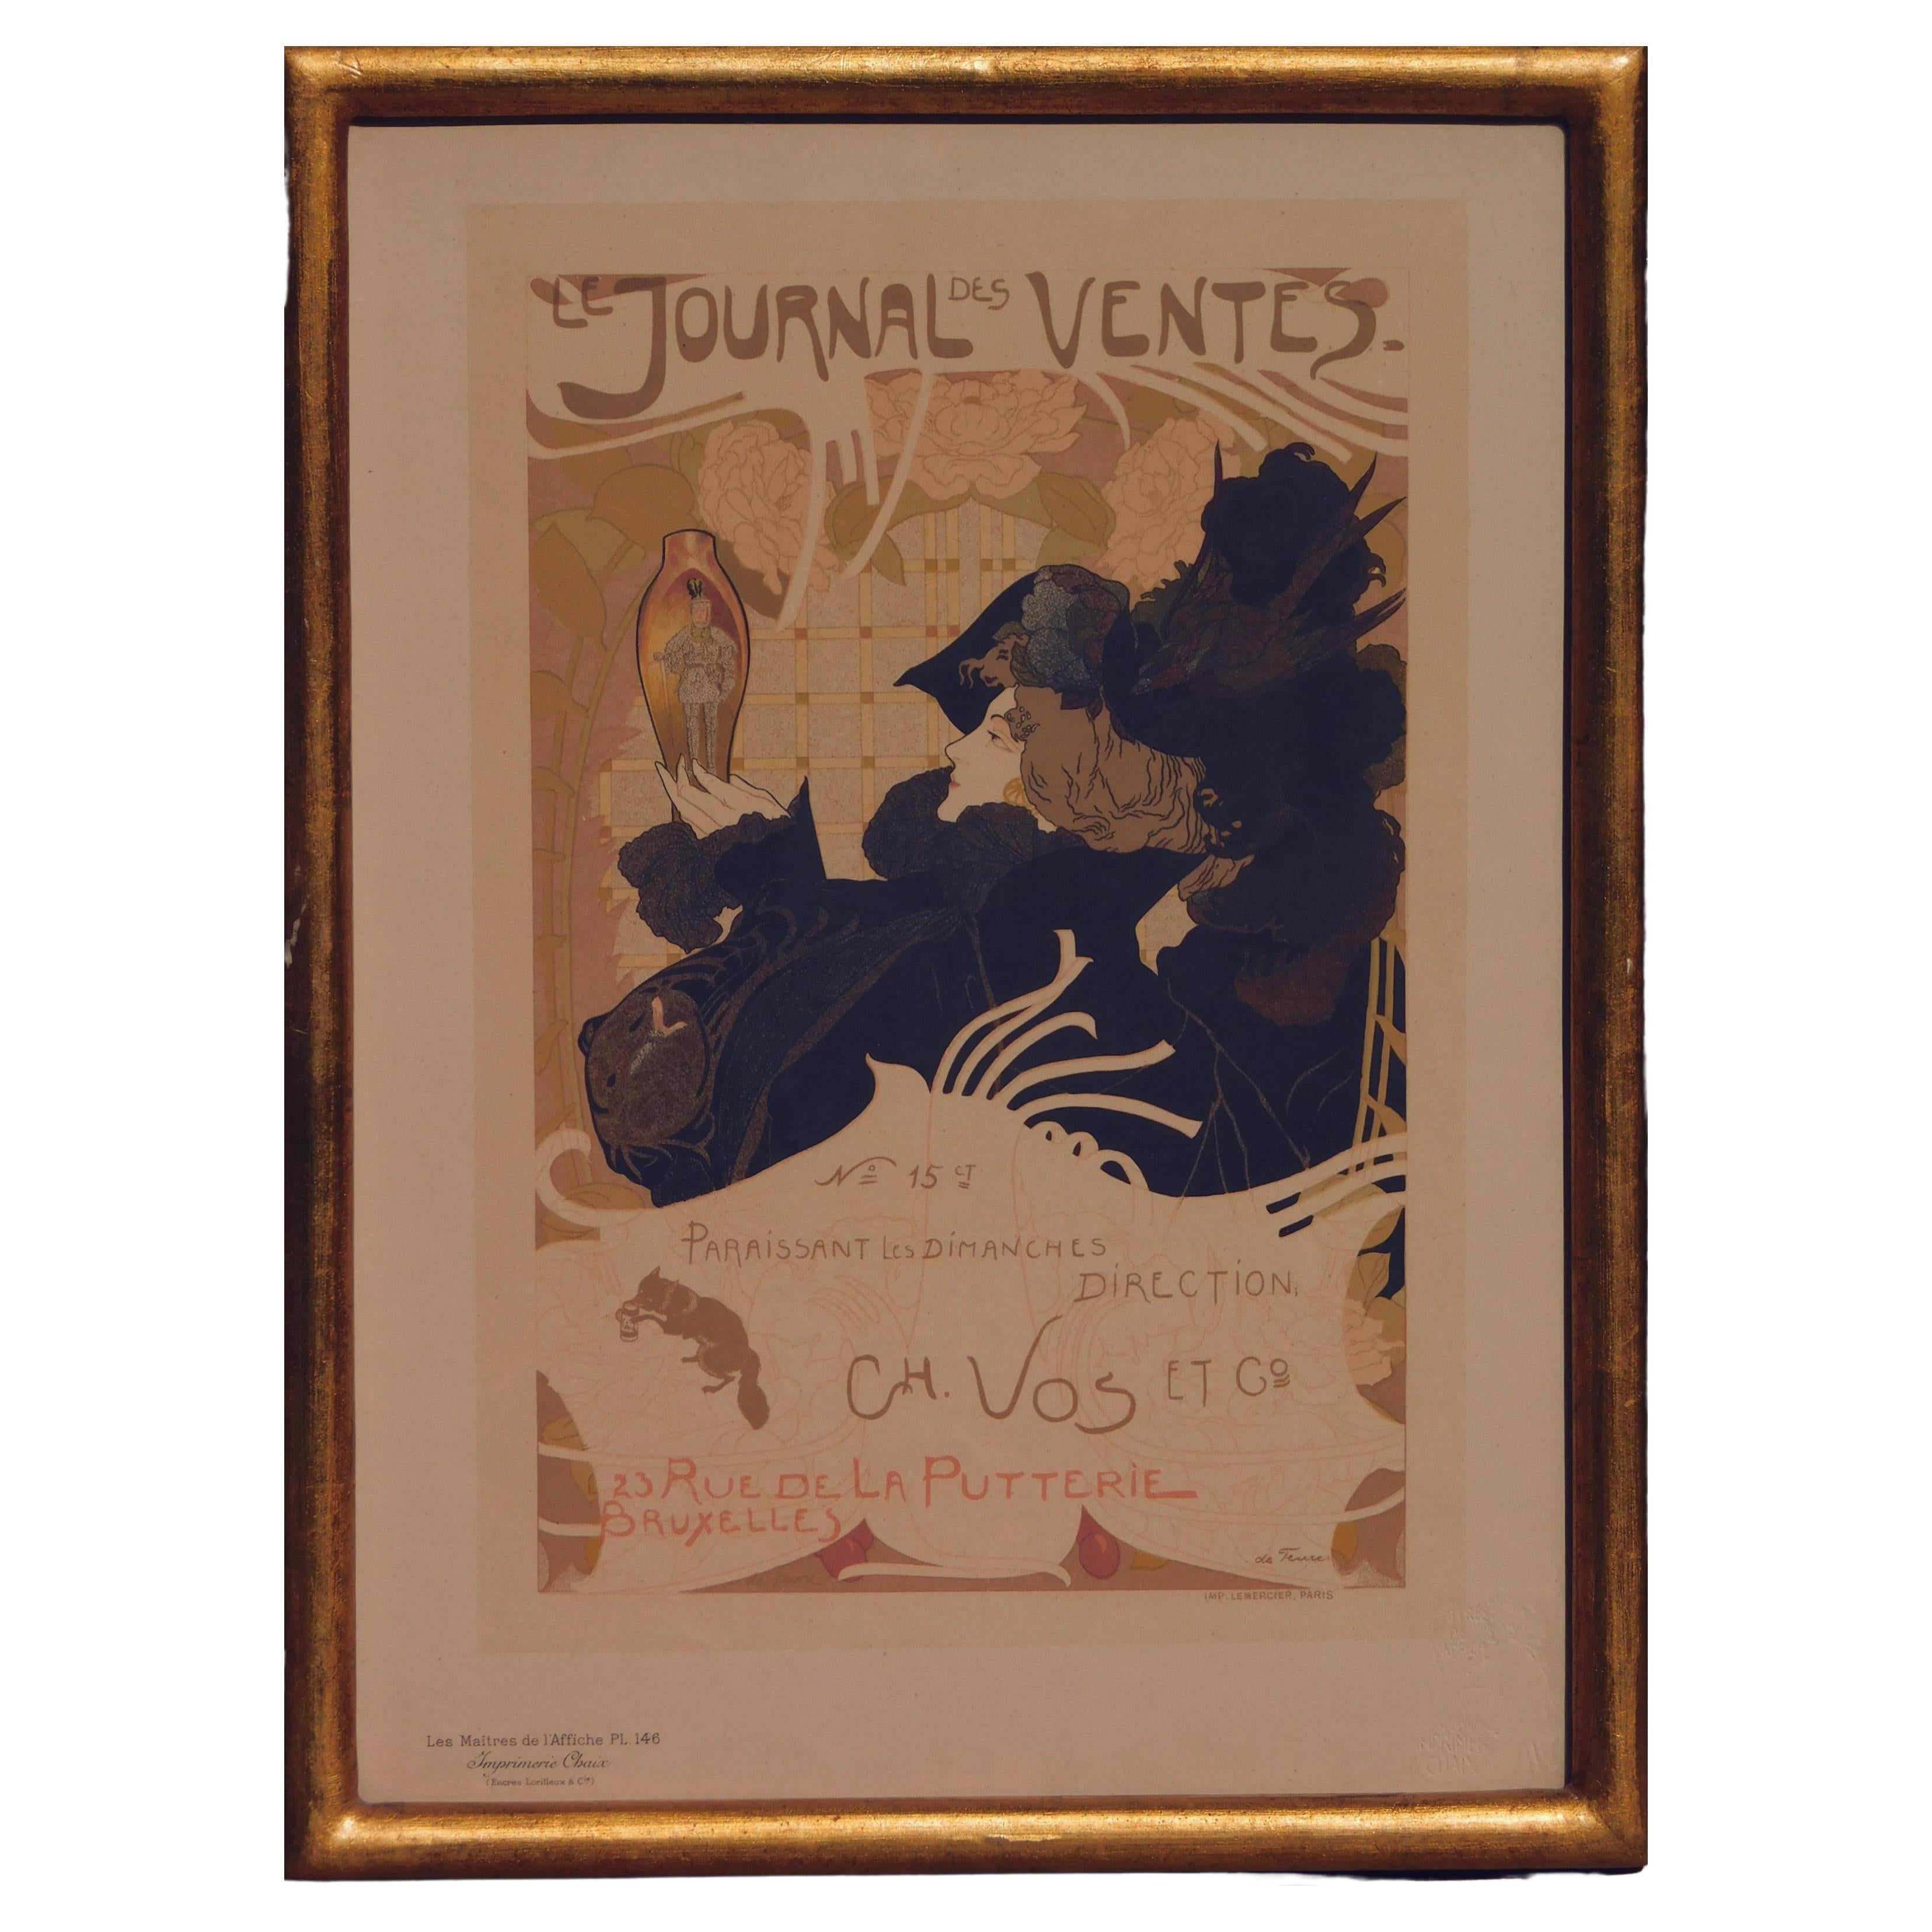 Georges deFeure Art Nouveau Color Lithograph, Journal des Ventes